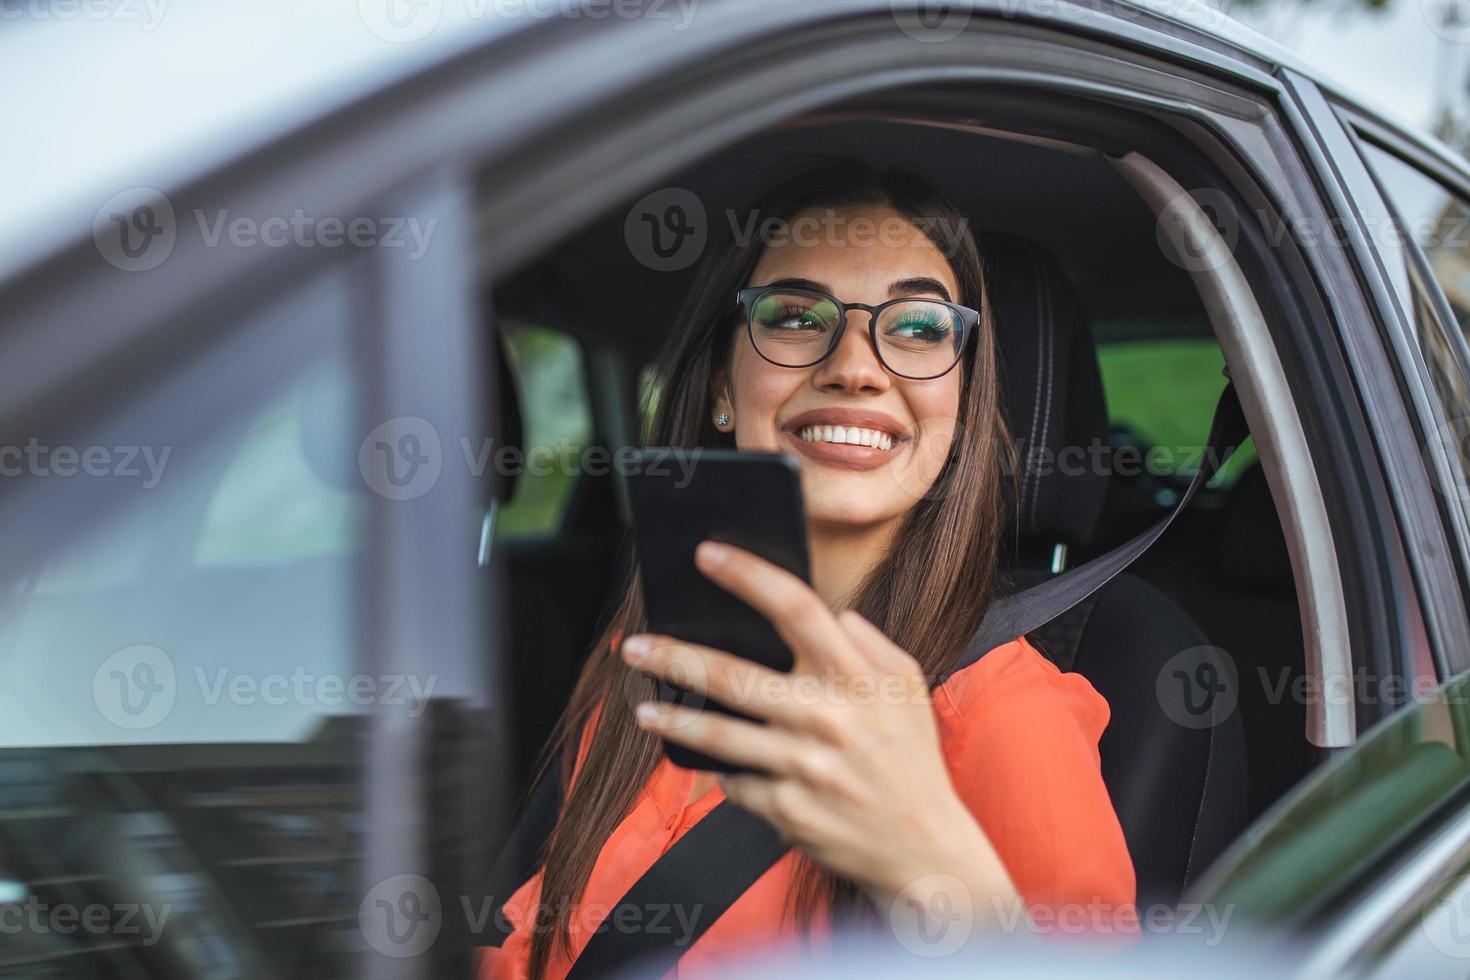 Fahrerin mit einem Smartphone im Auto. Fahrerin mit einem Smartphone im Auto. freizeit-, roadtrip-, technologie-, reise- und personenkonzept - glückliche frau, die auto mit smartphone fährt foto